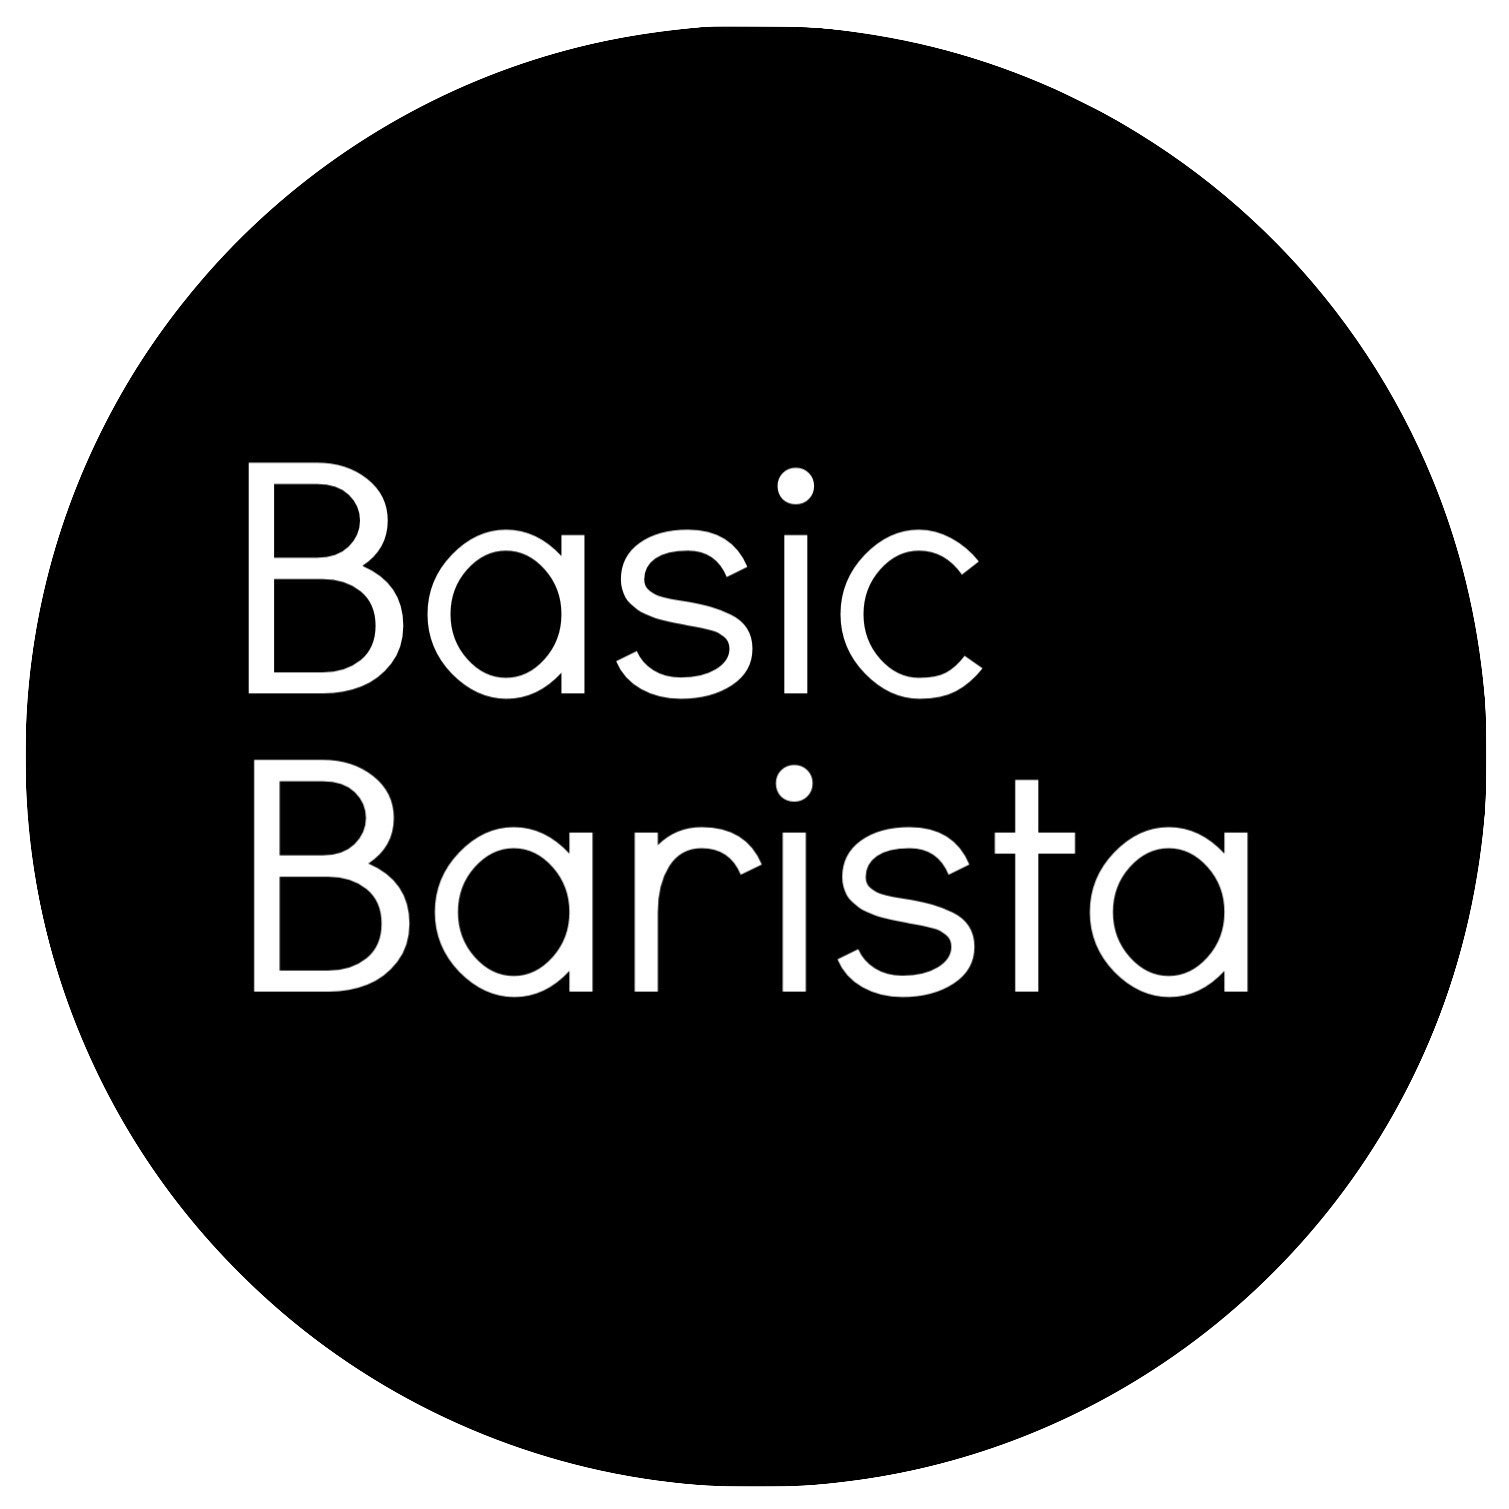 Basic Barista